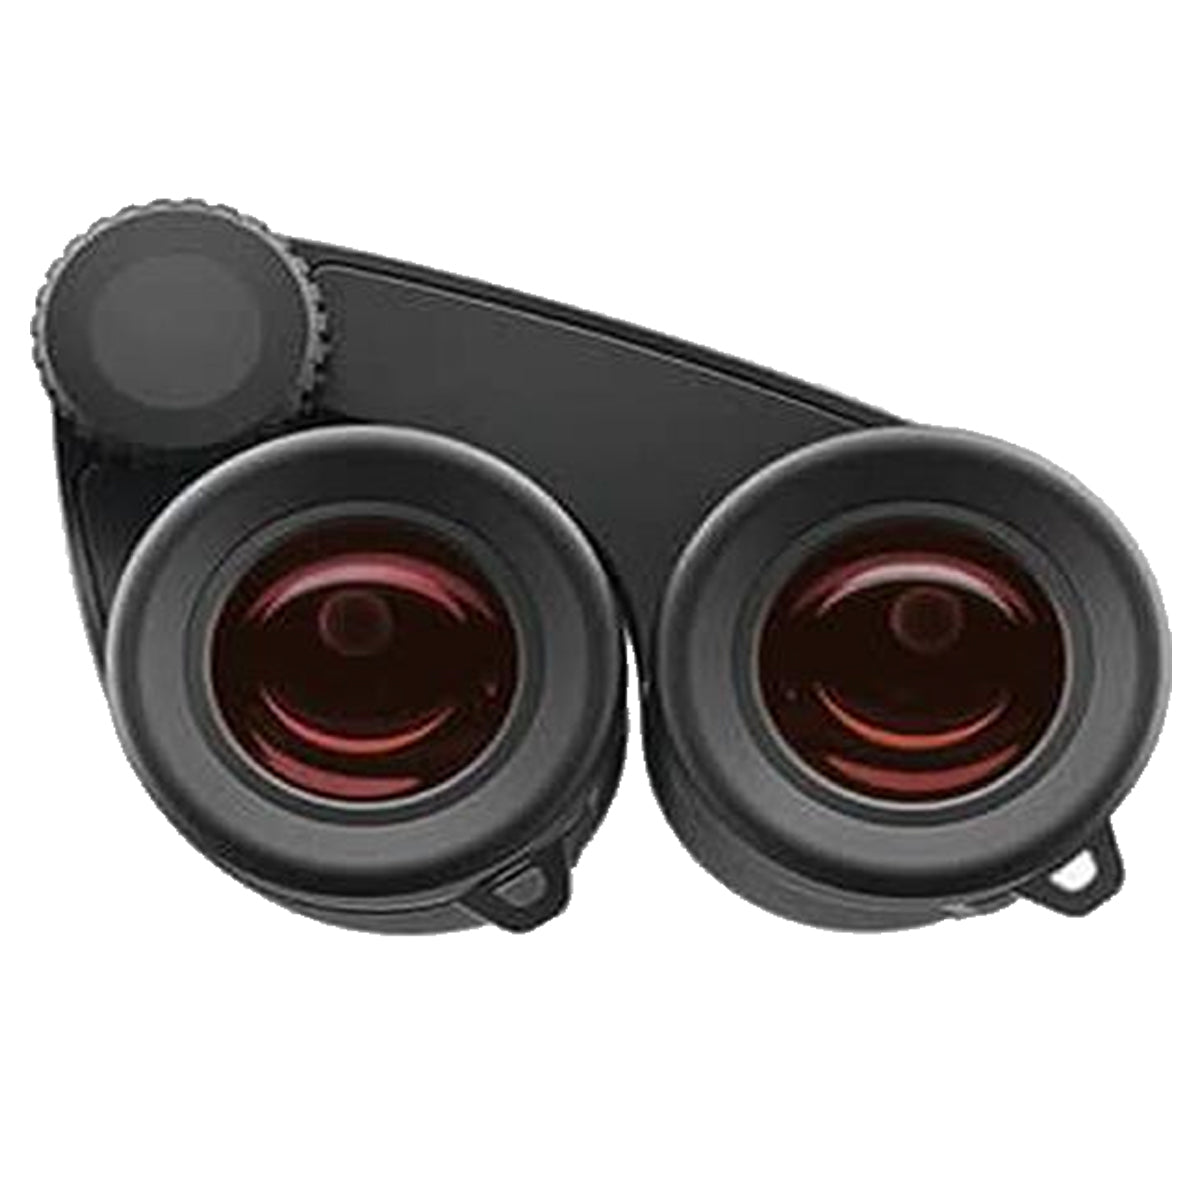 Zeiss Victory Pocket 8x25 Binoculars